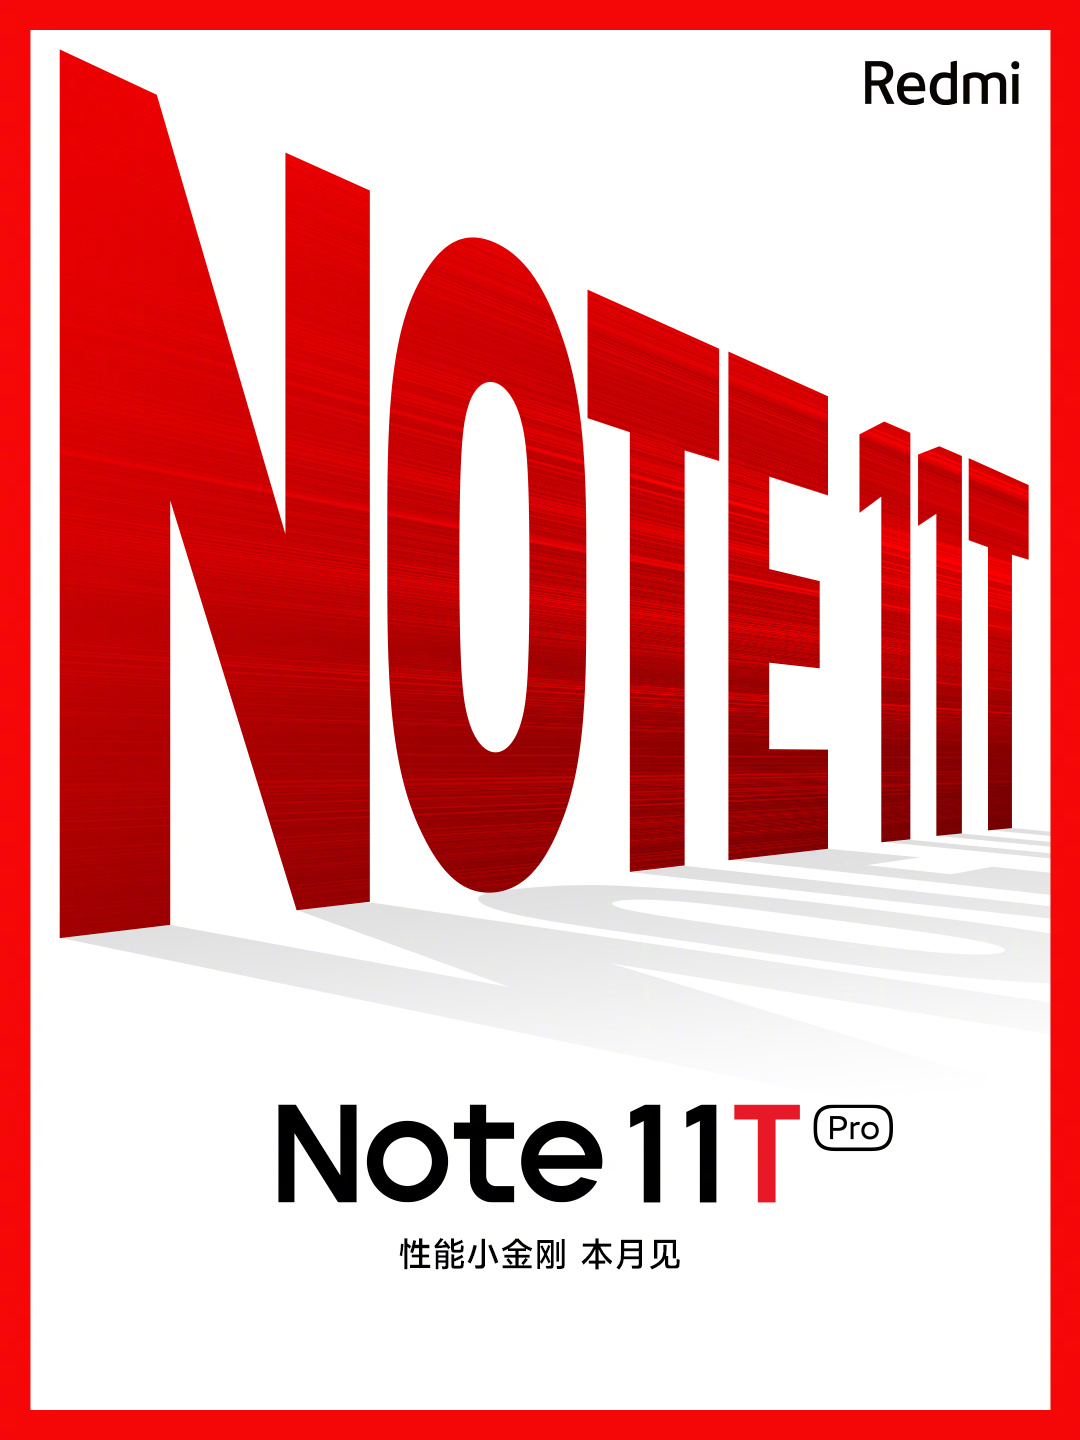 Redmi Note 11T将于本月发布